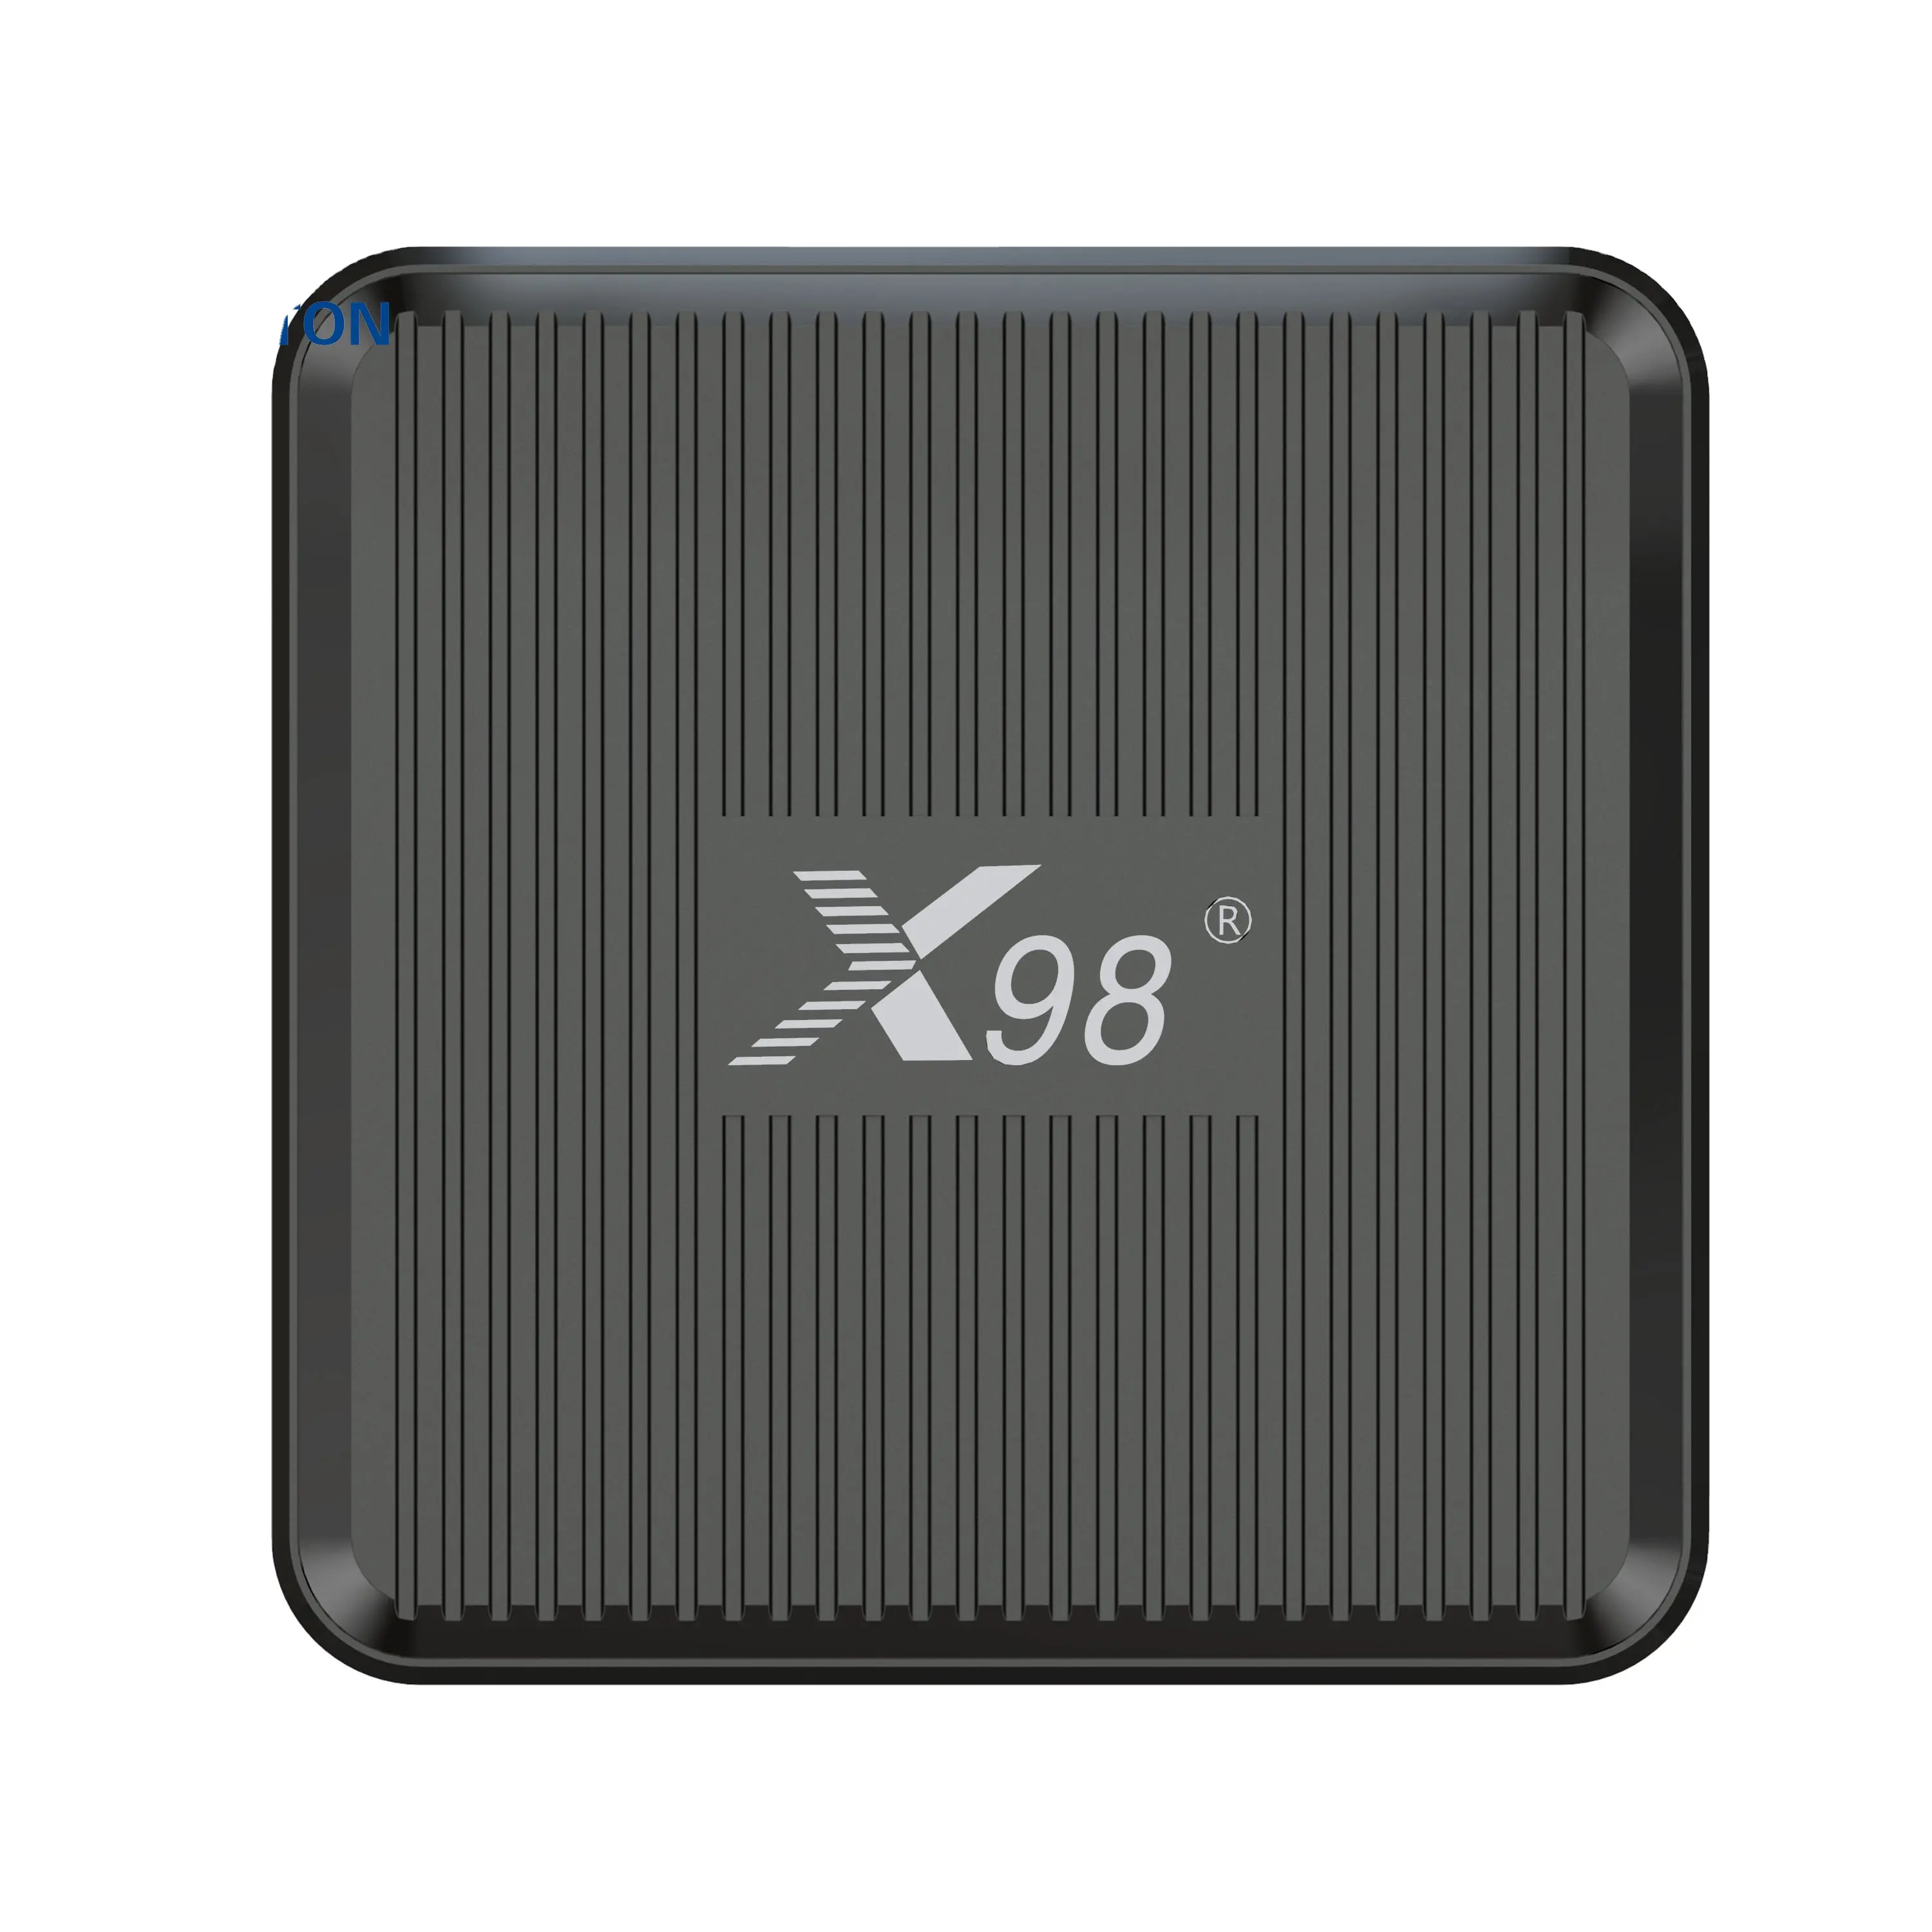 최신 X98q 4k Amlogic TV 박스 2.4g/5g 와이파이 스마트 2.4 및 5G 와이파이 AV1 HDR 10 + TF 카드 게임 영화 안드로이드 TV 박스